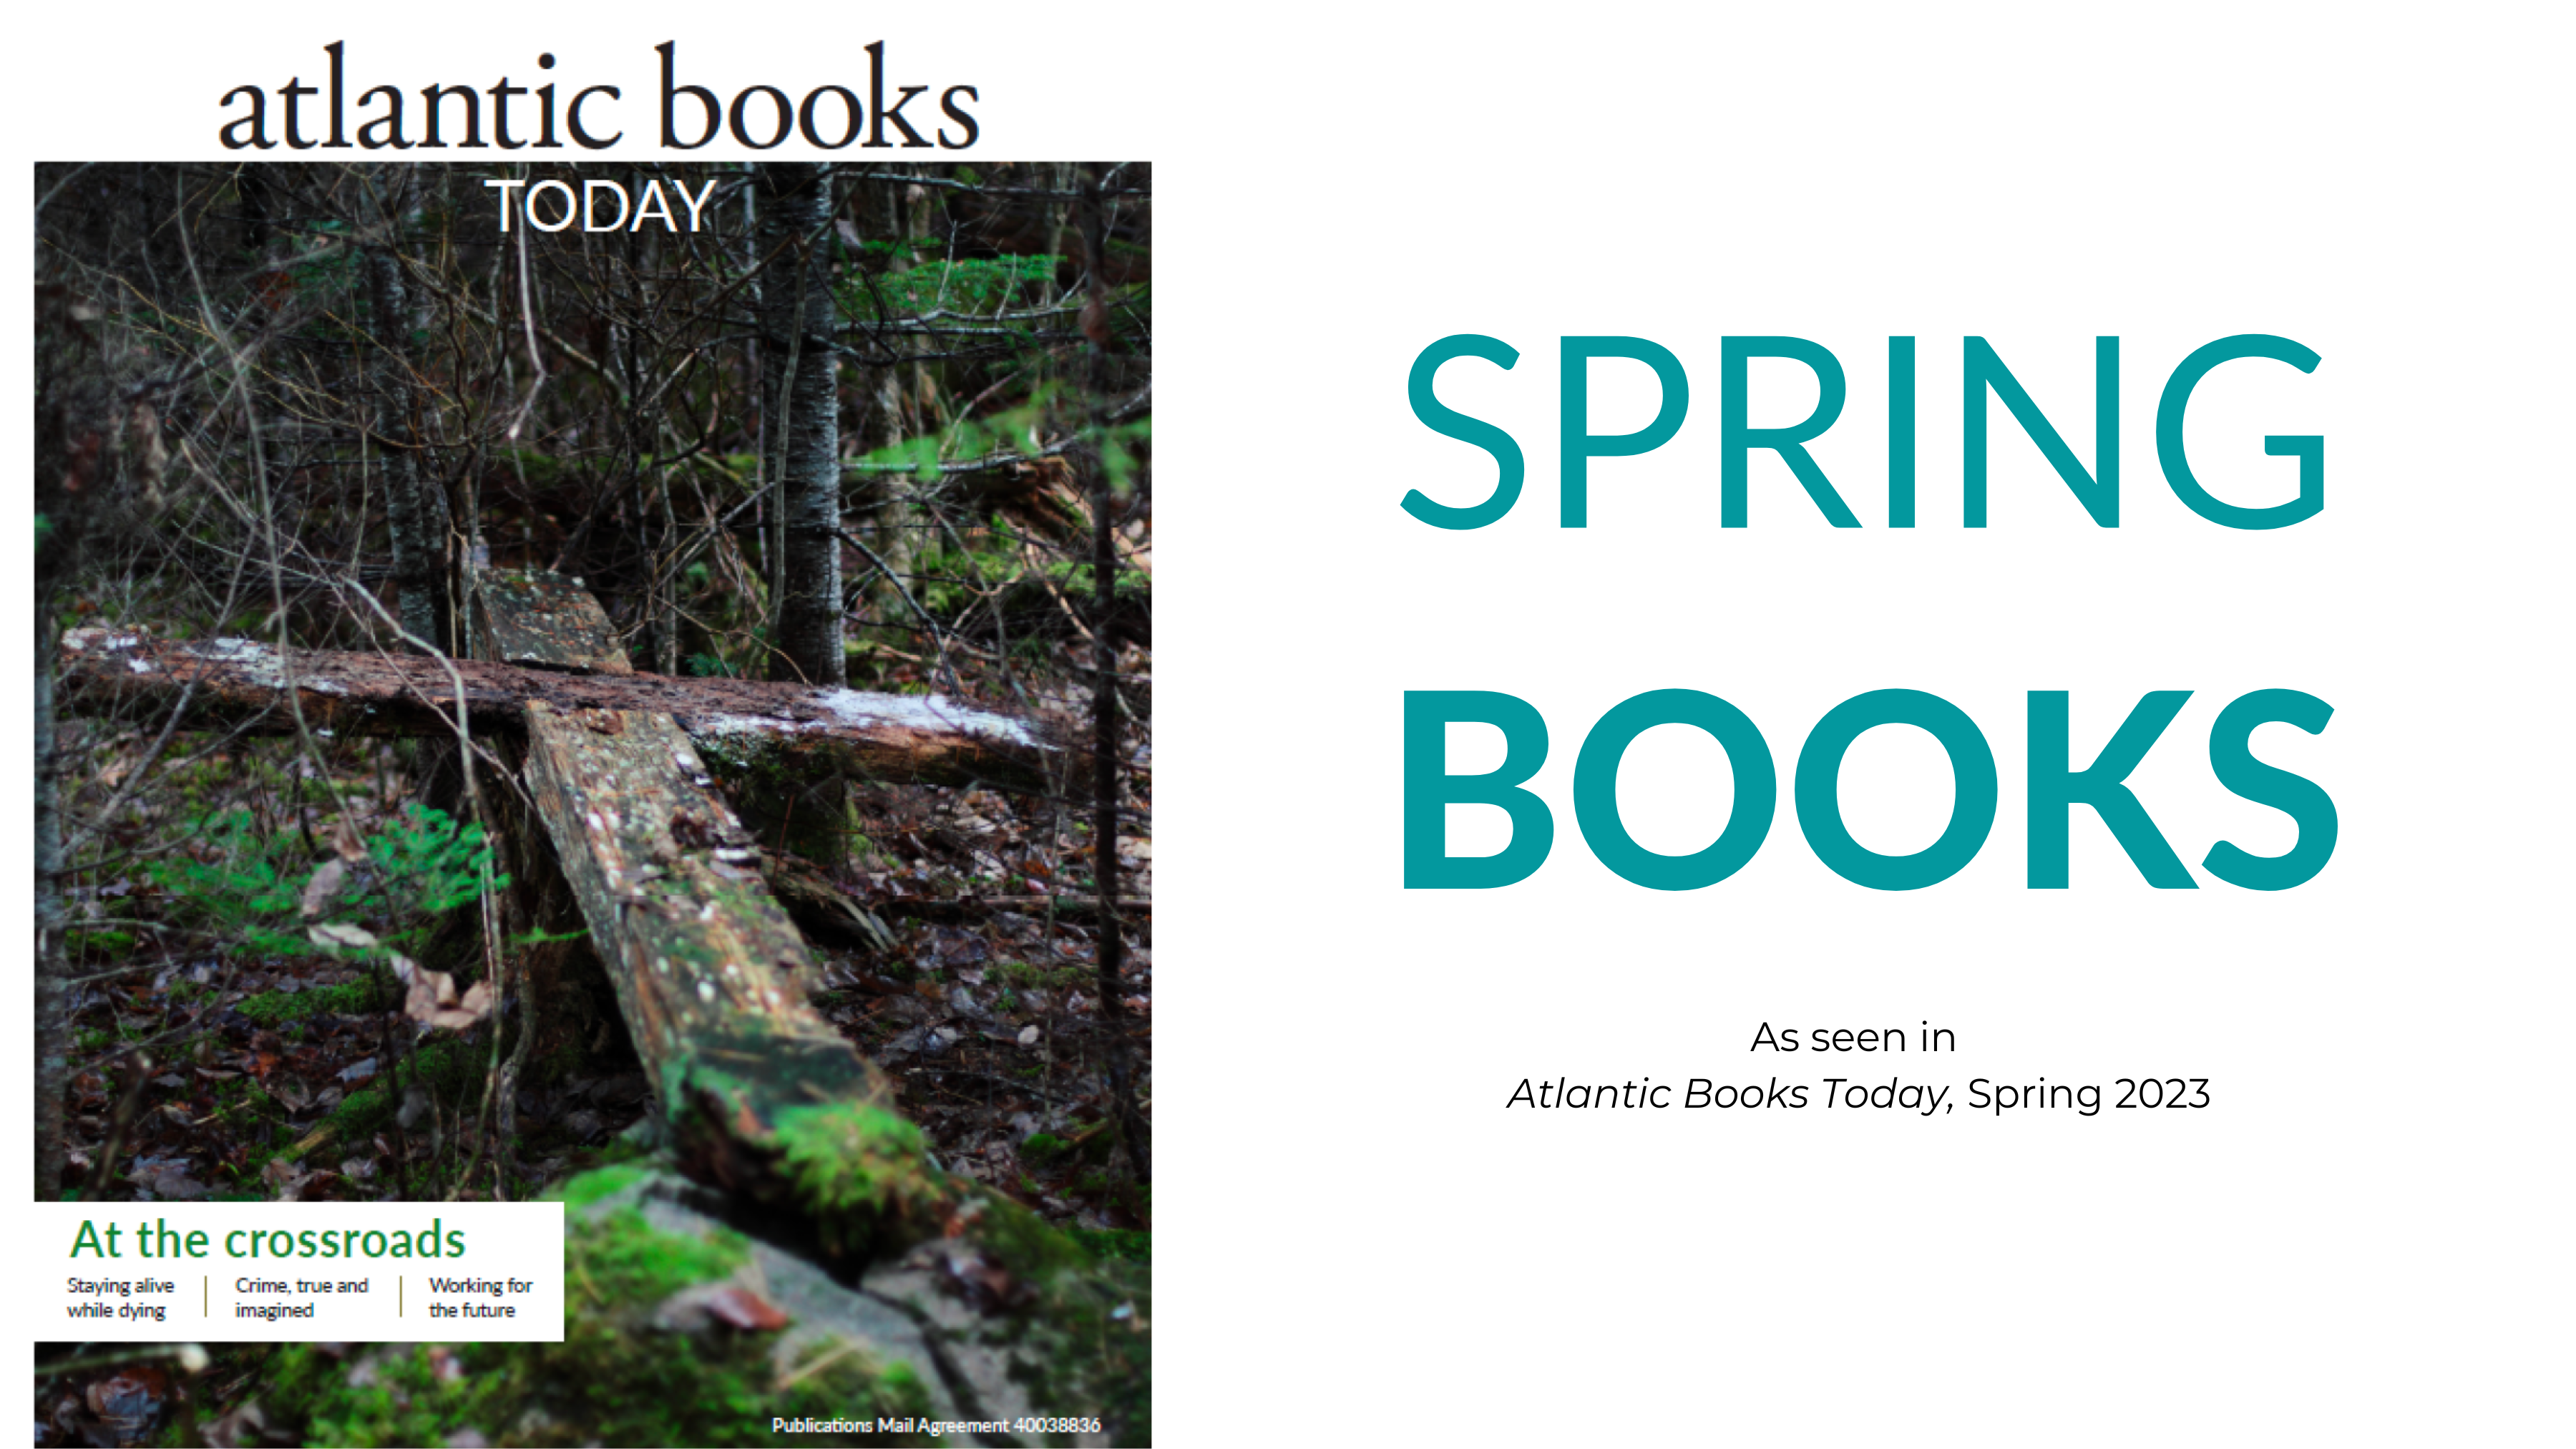 Spring Books (ABT 97)